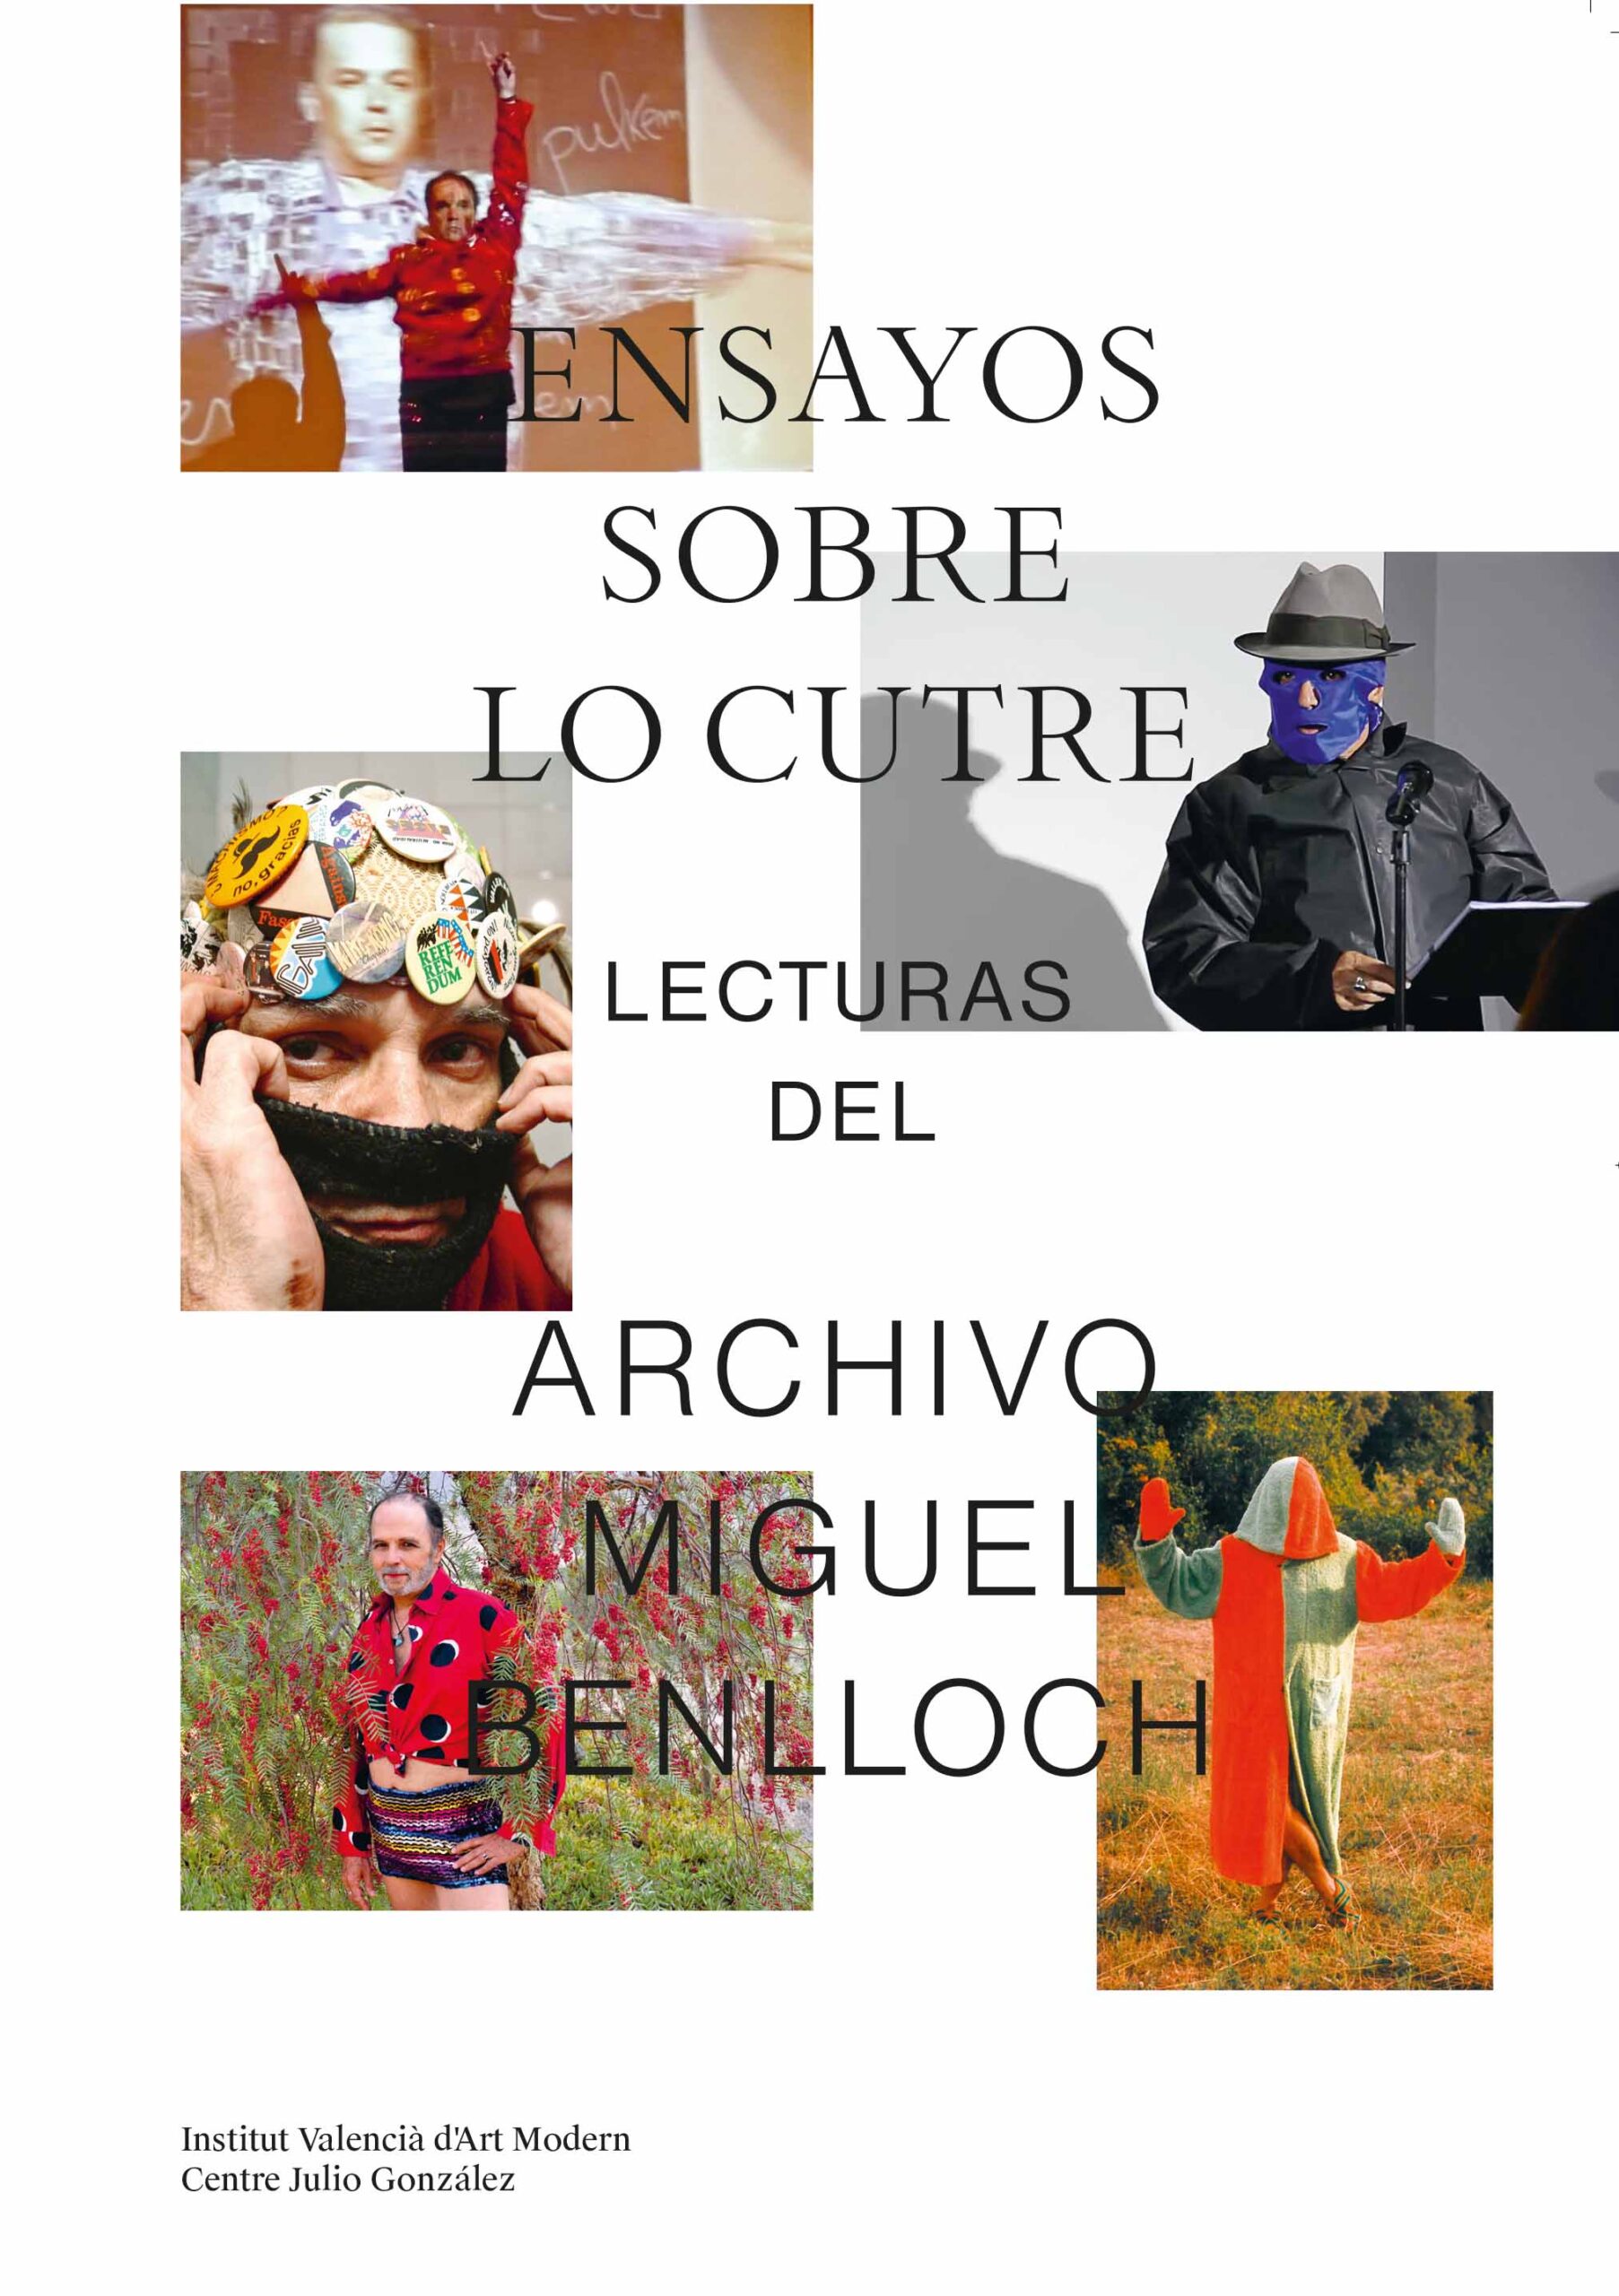 Catálogo de exposición ‘Ensayos sobre lo cutre. Lecturas del Archivo Miguel Benlloch’